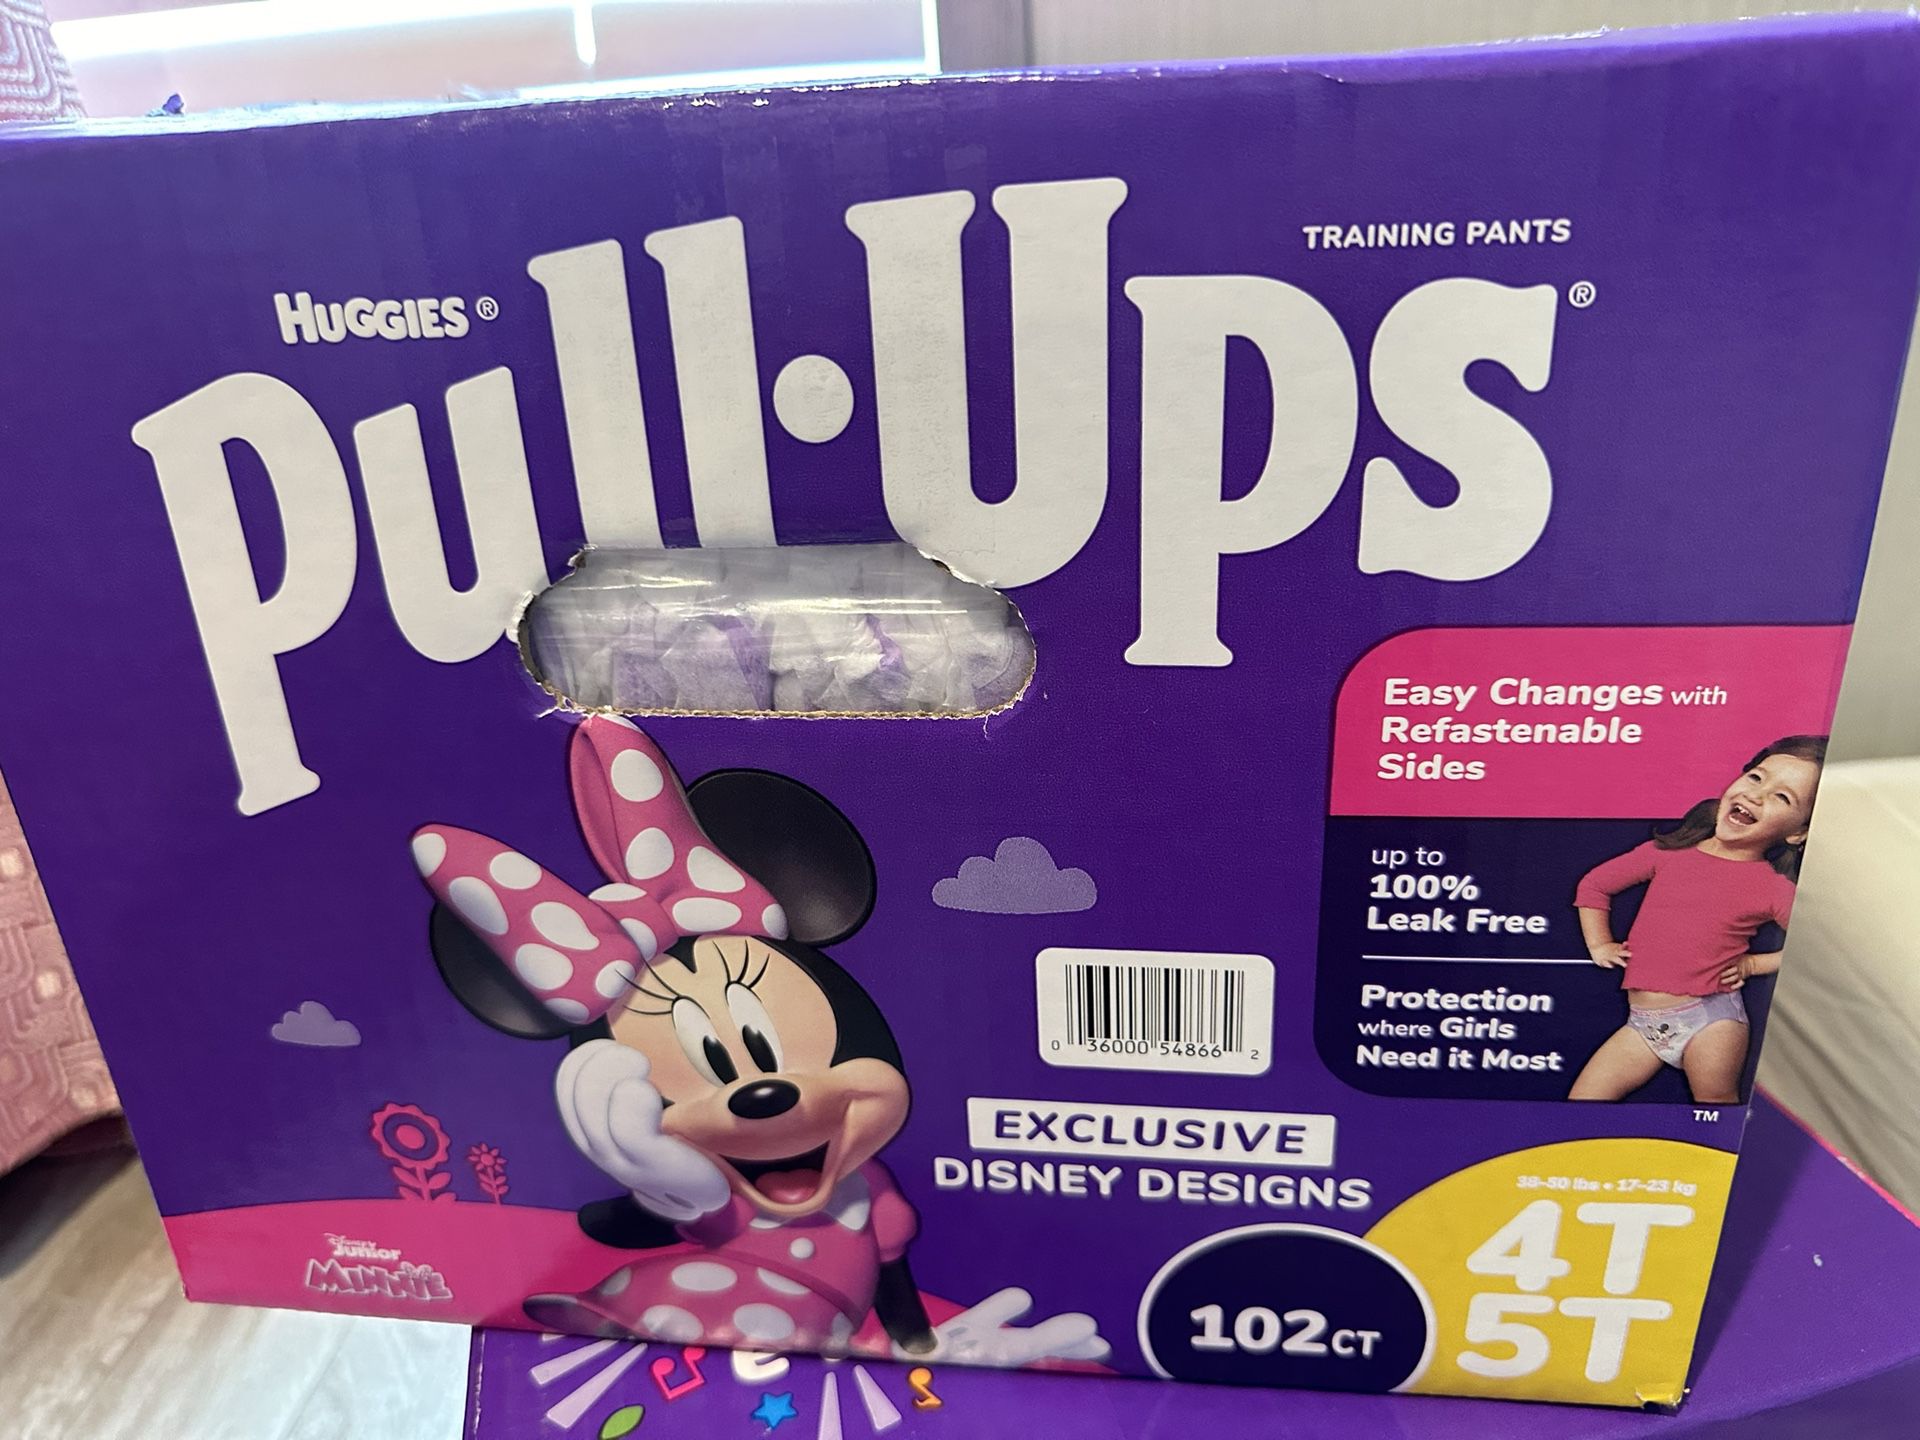 Pull-ups Brand New 